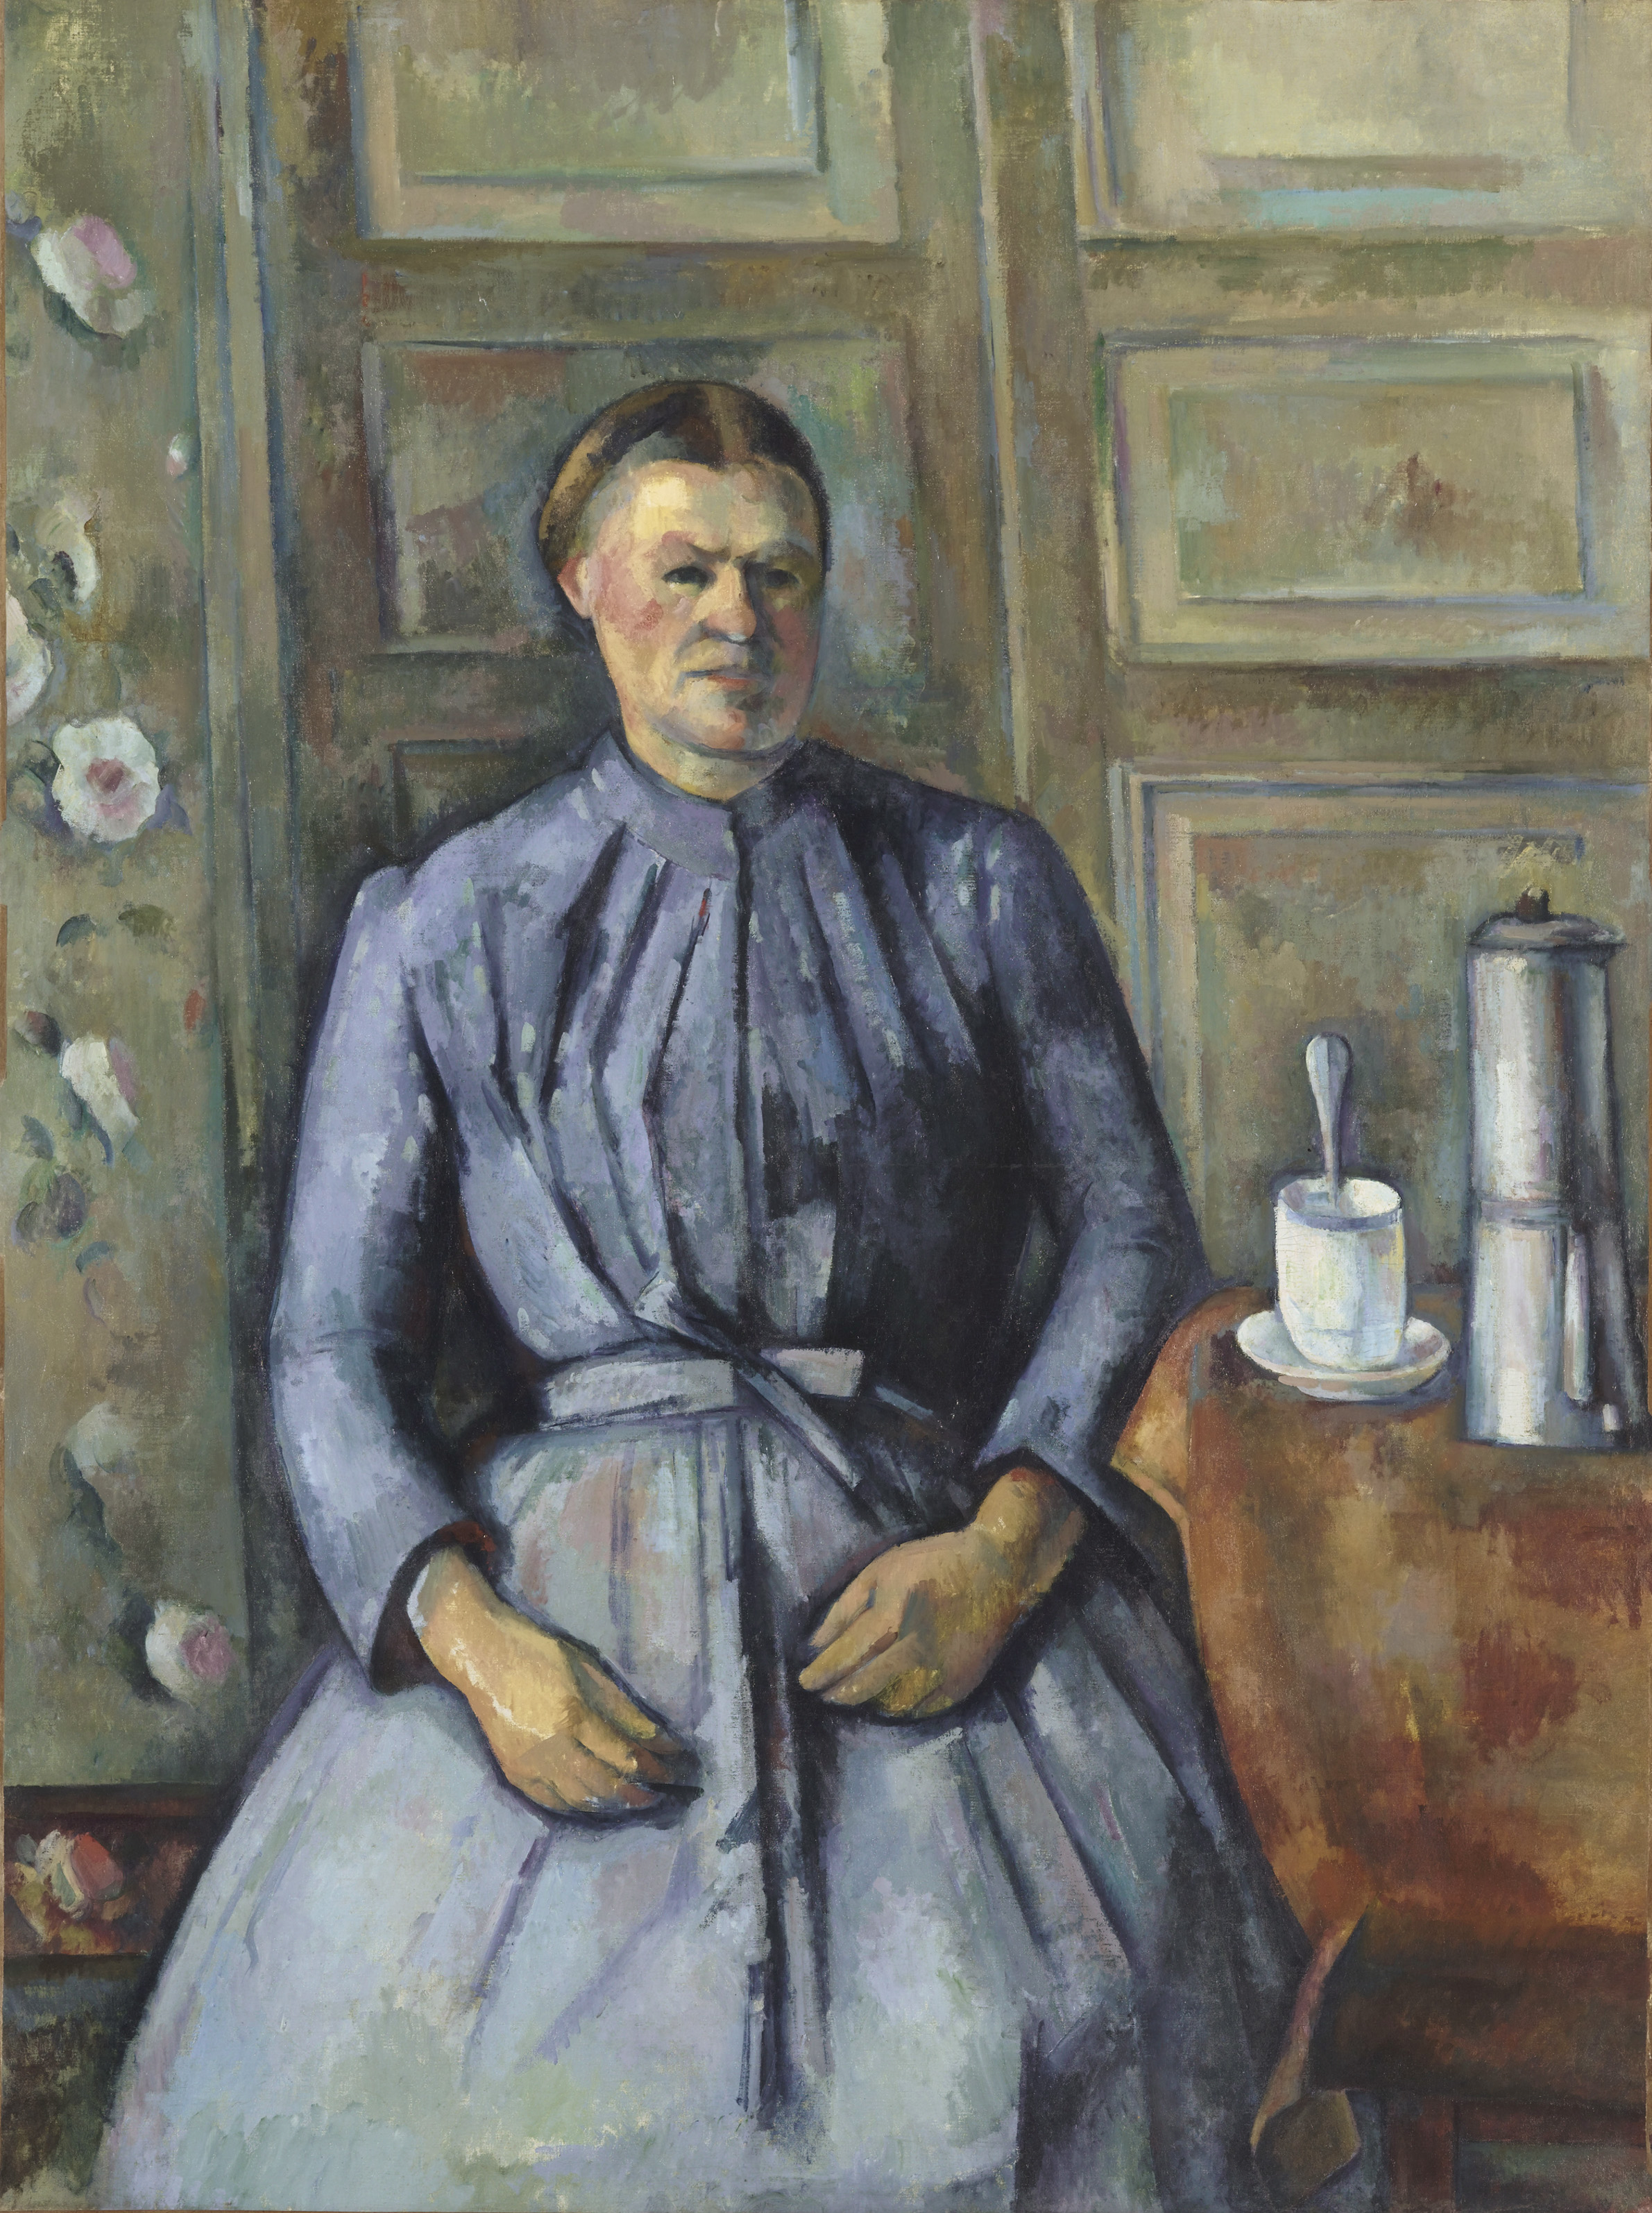 La femme à la cafetière by Paul Cézanne - Circa 1895 Musée d'Orsay